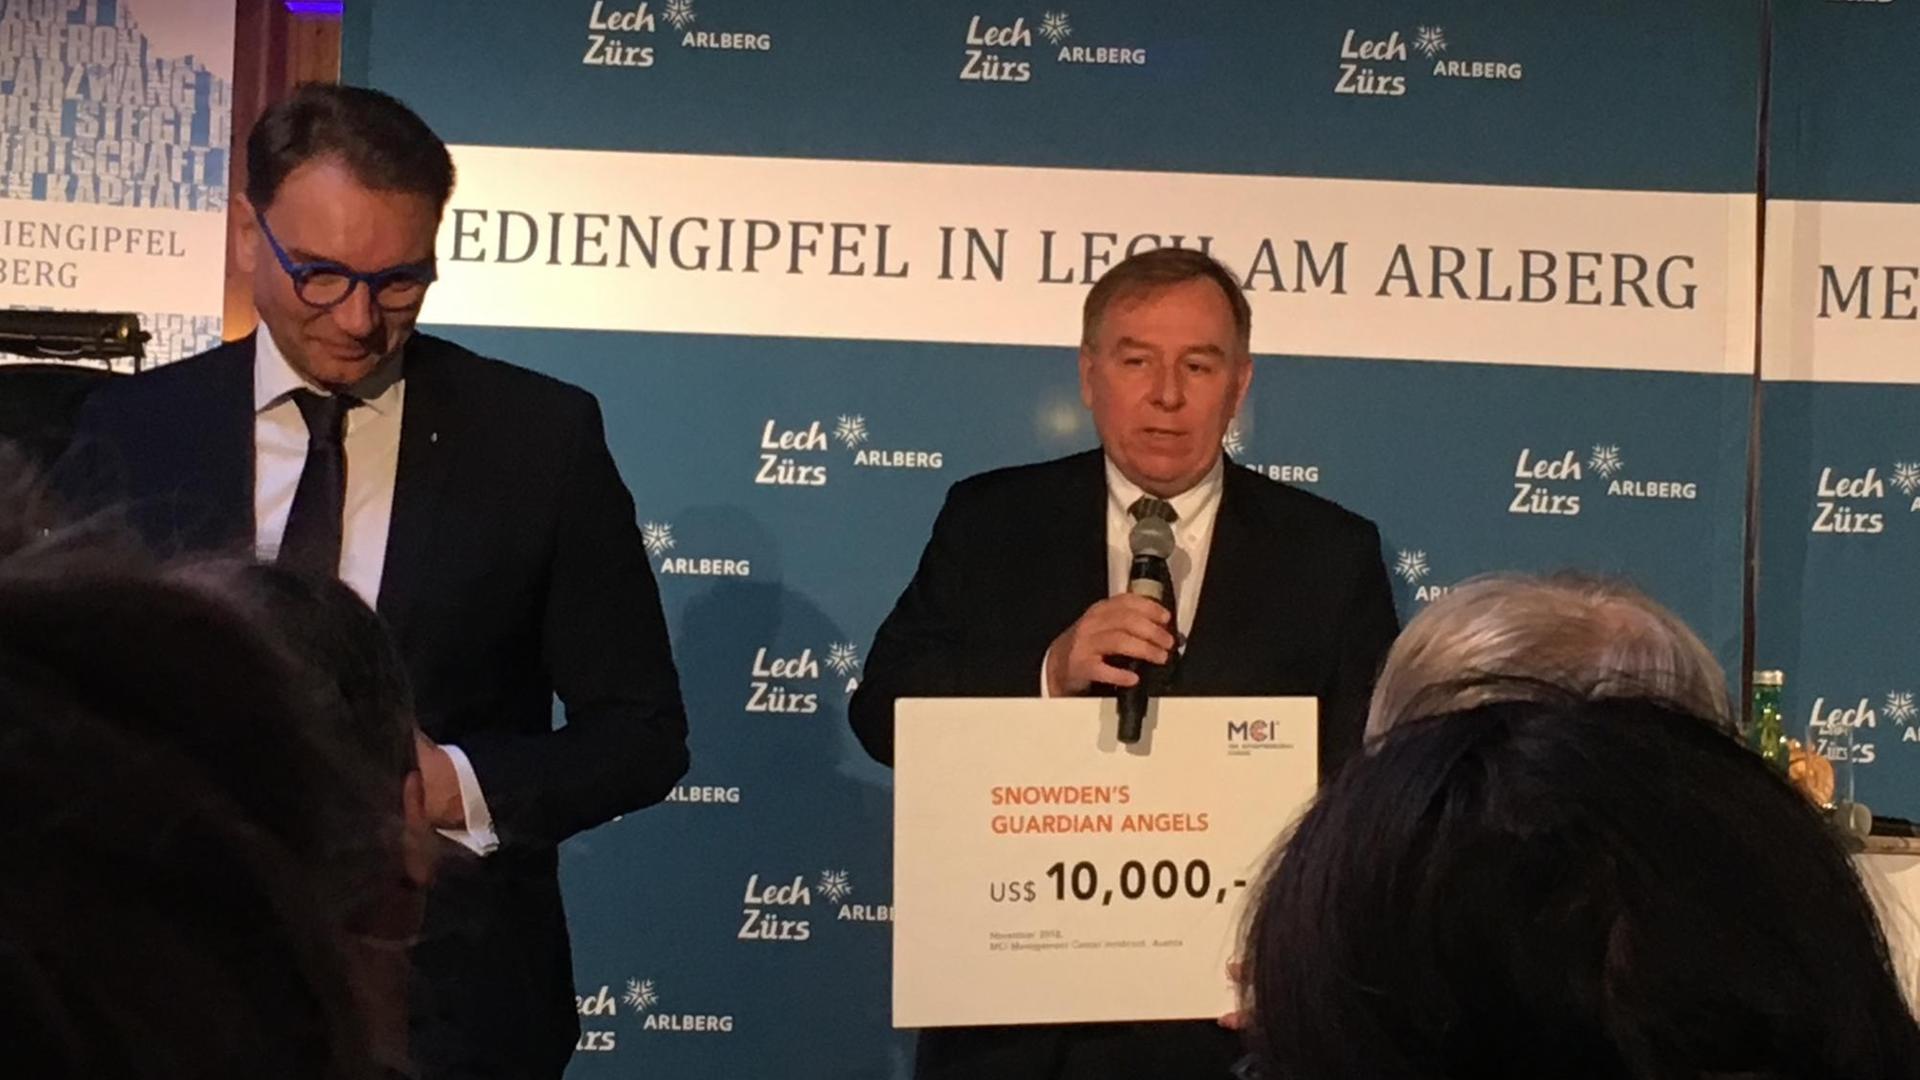 Robert Tibbo, Anwalt von Edward Snowden, bei der Übername einer Geldspende für die Flüchtlingsfamilie auf dem europäischen Mediengipfel in Lech, Österreich 2018